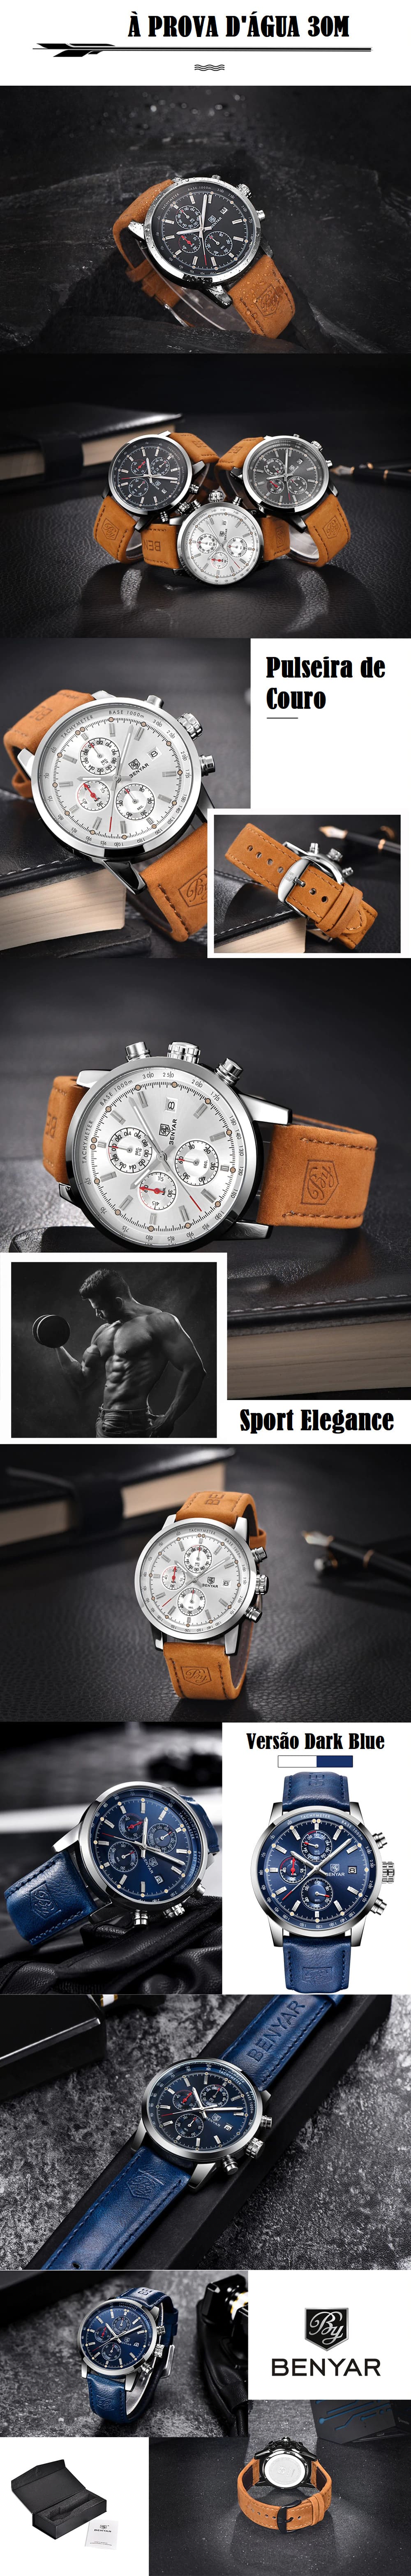 Relógio Masculino Analógico Sport Elegance Benyar à prova d'água e com pulseira de couro legítimo